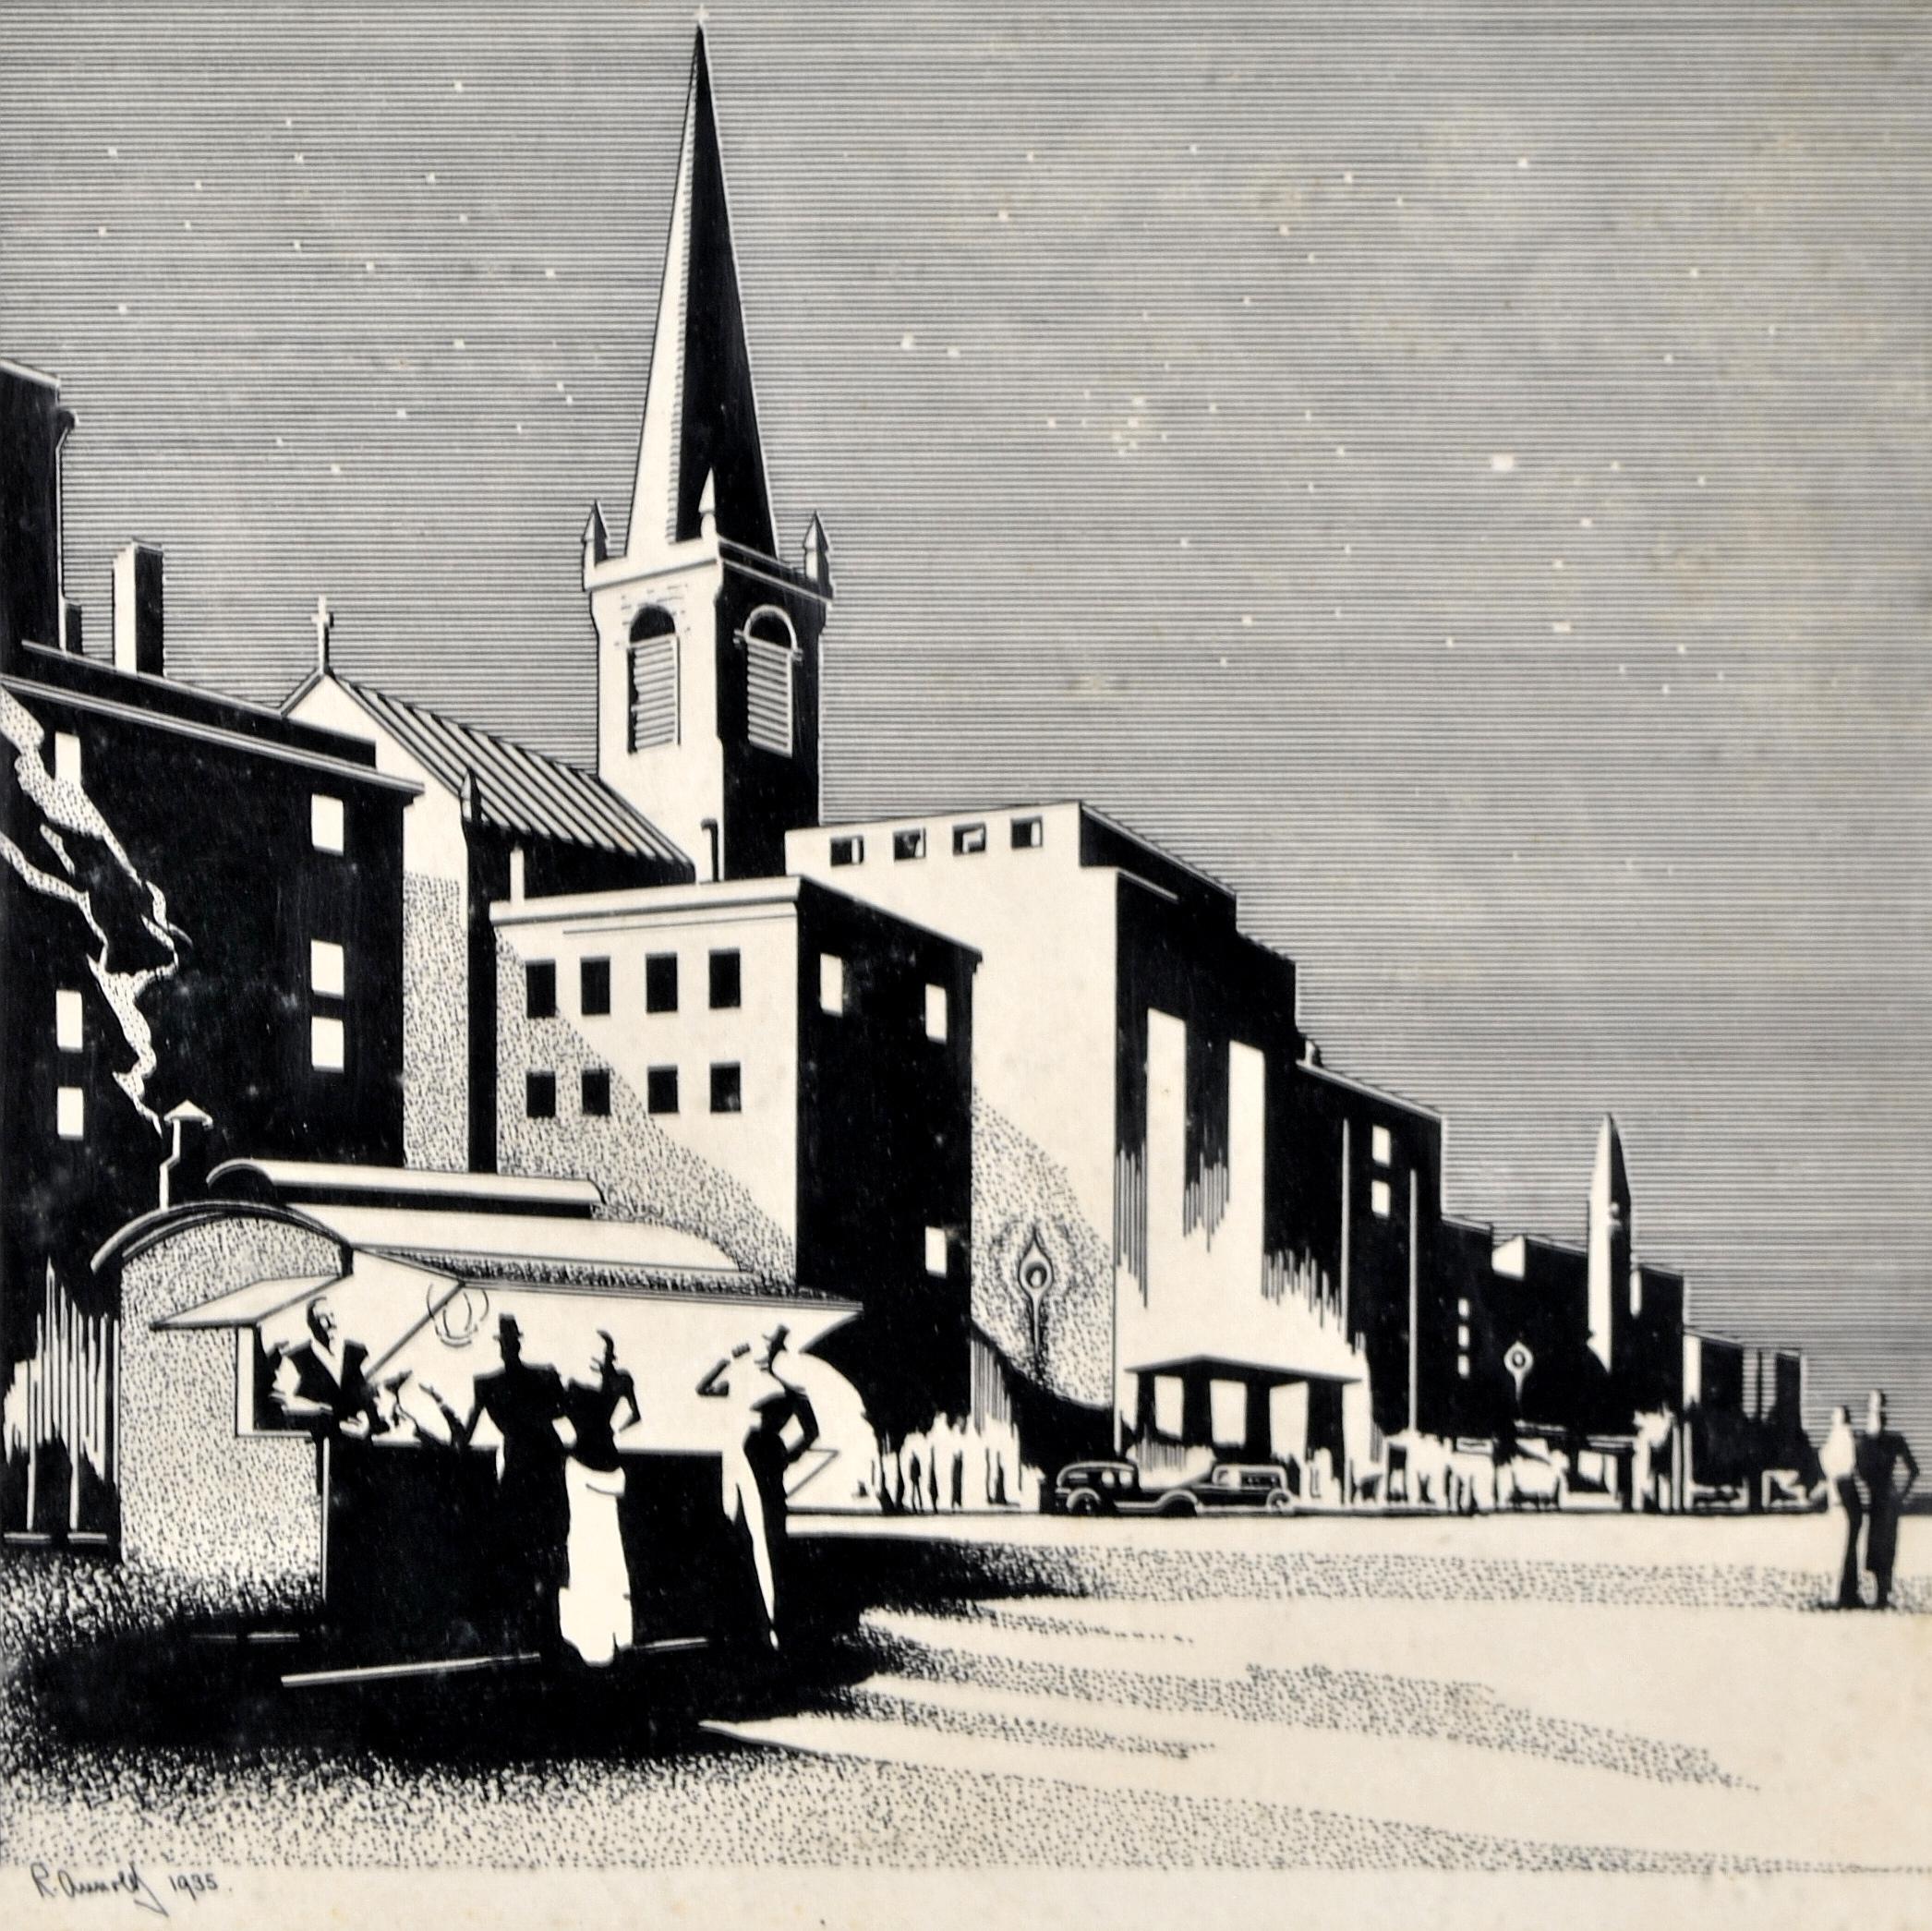 Townscape - Figuren in einer Art-déco-Stadt des frühen 20. Jahrhunderts, Holzschnitt-Druckbild – Print von Unknown